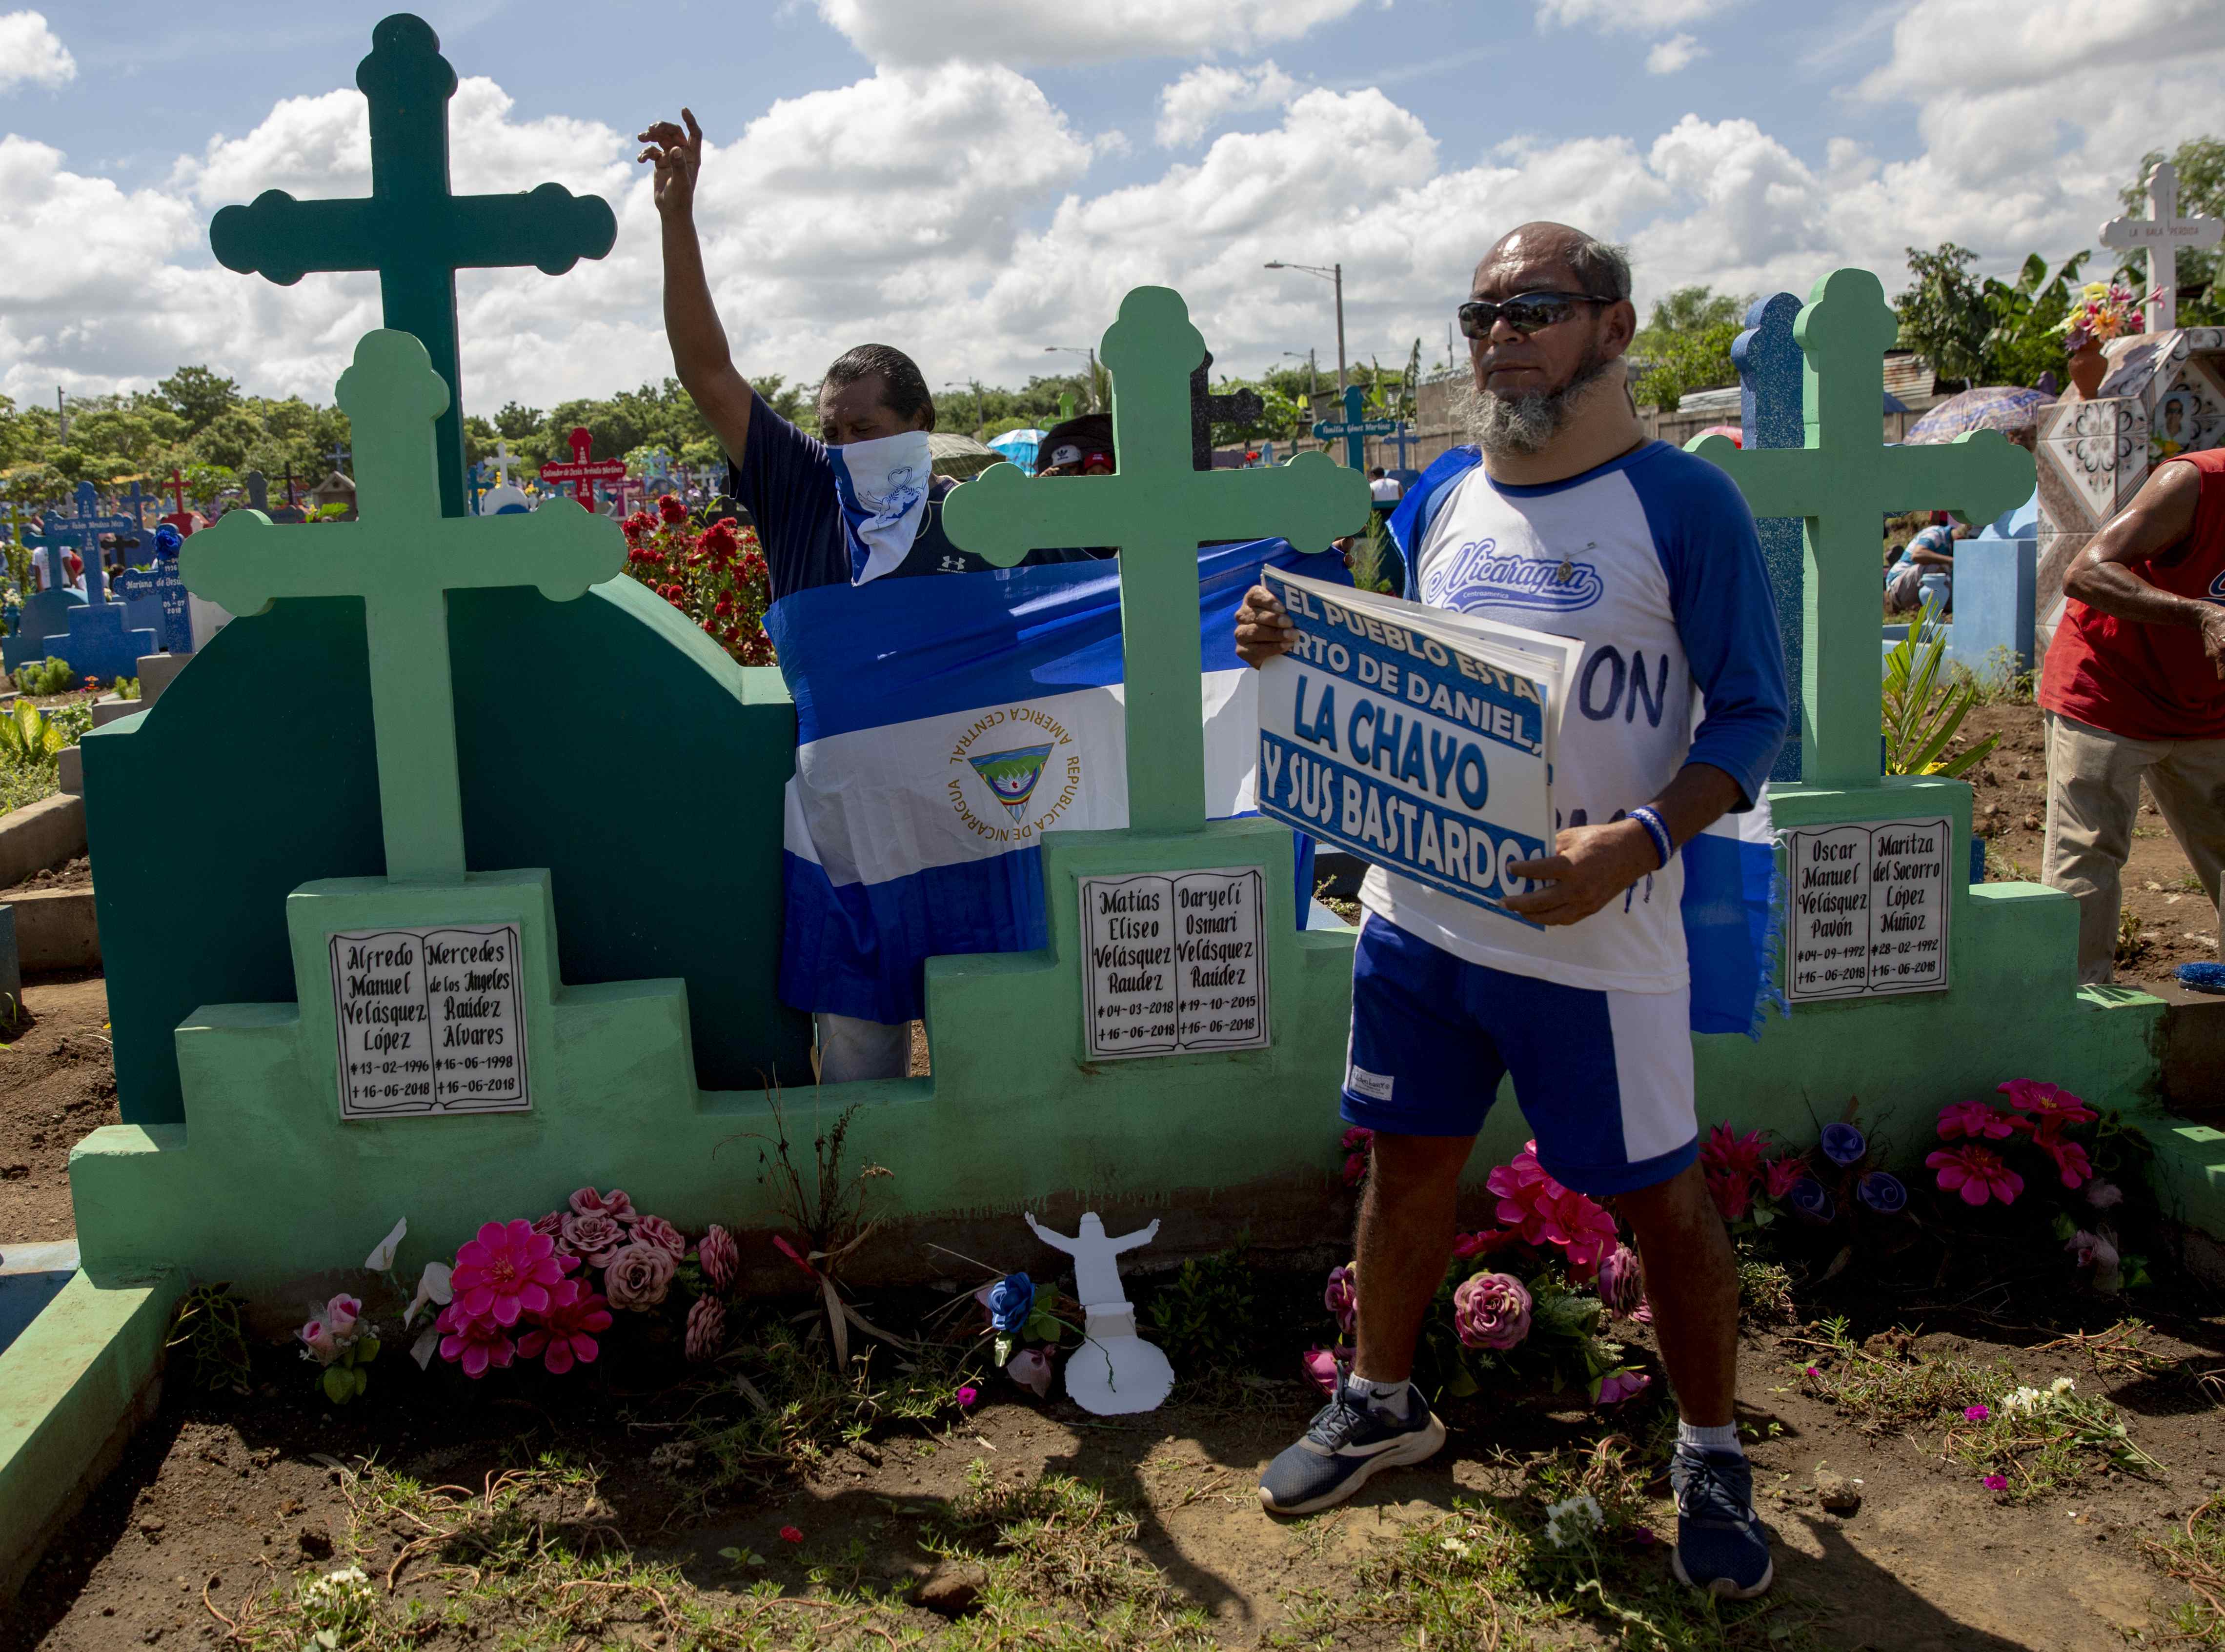 Vuelven a detener a maratonista sexagenario que corre contra Daniel Ortega